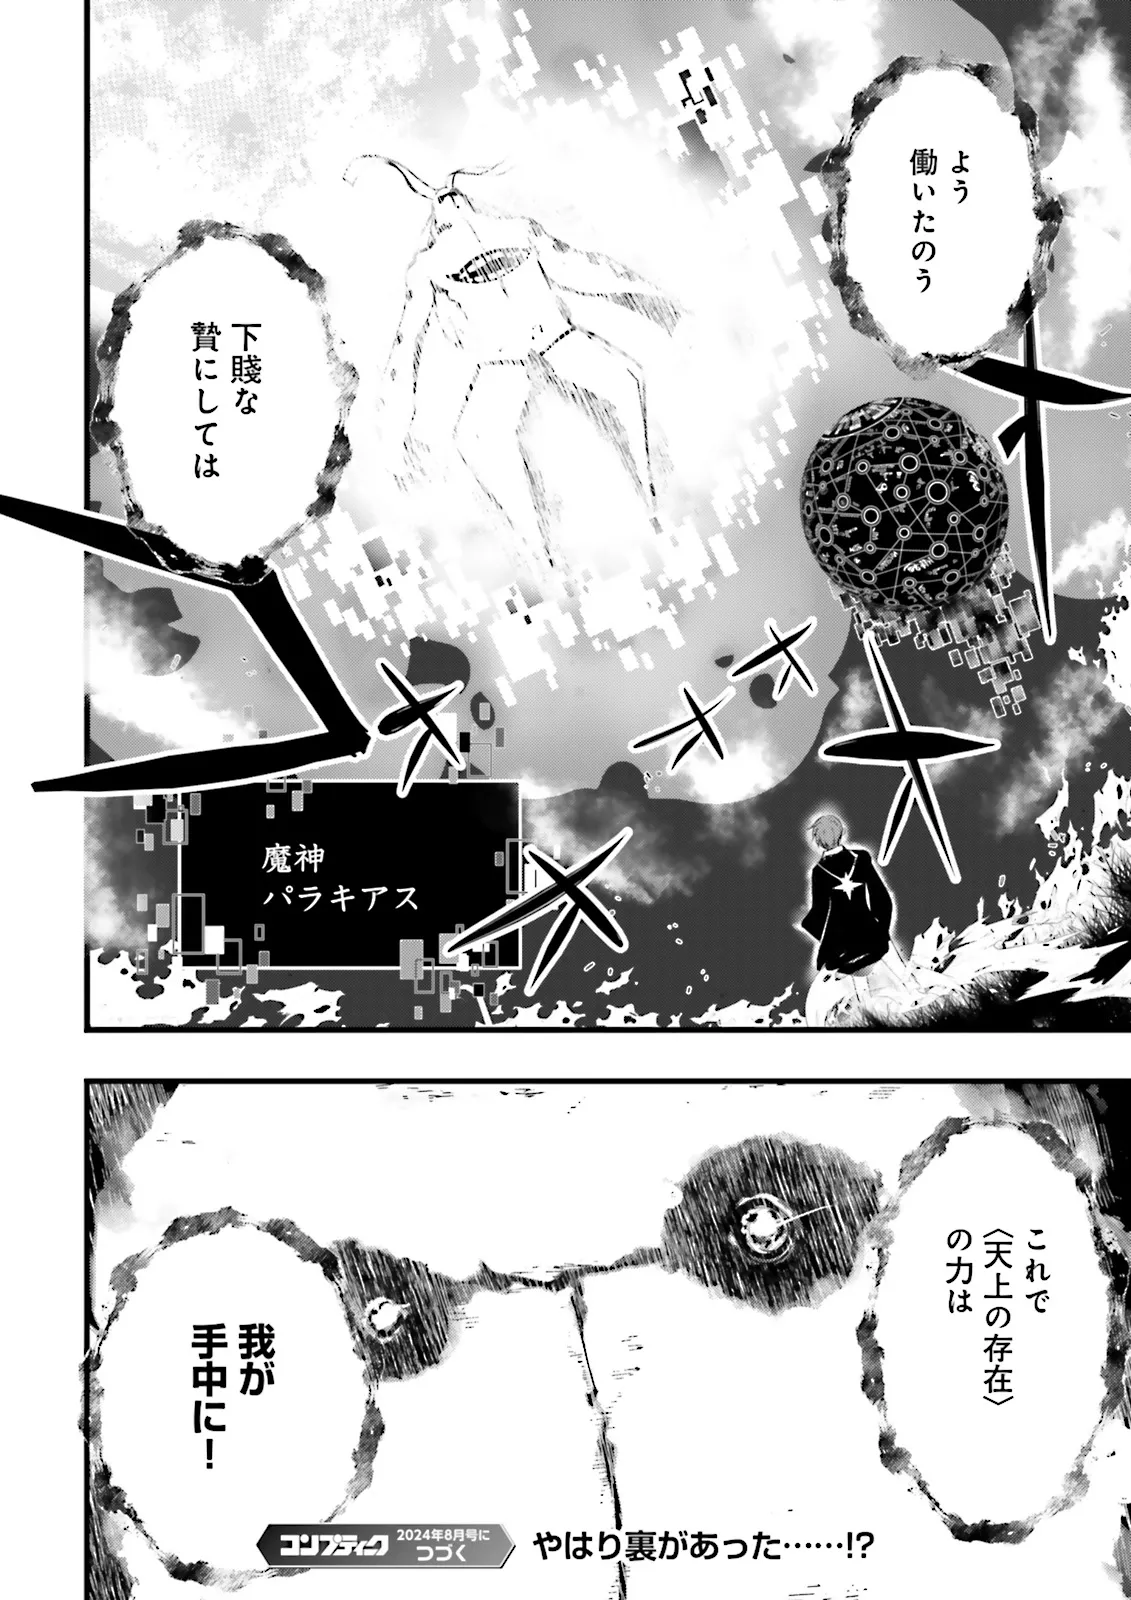 Sukiru Ga Nakereba Level wo Ageru ~ 99 Ga Kansuto No Sekai De Reberu 800 Man Kara Sutato ~ - Chapter 40.4 - Page 12